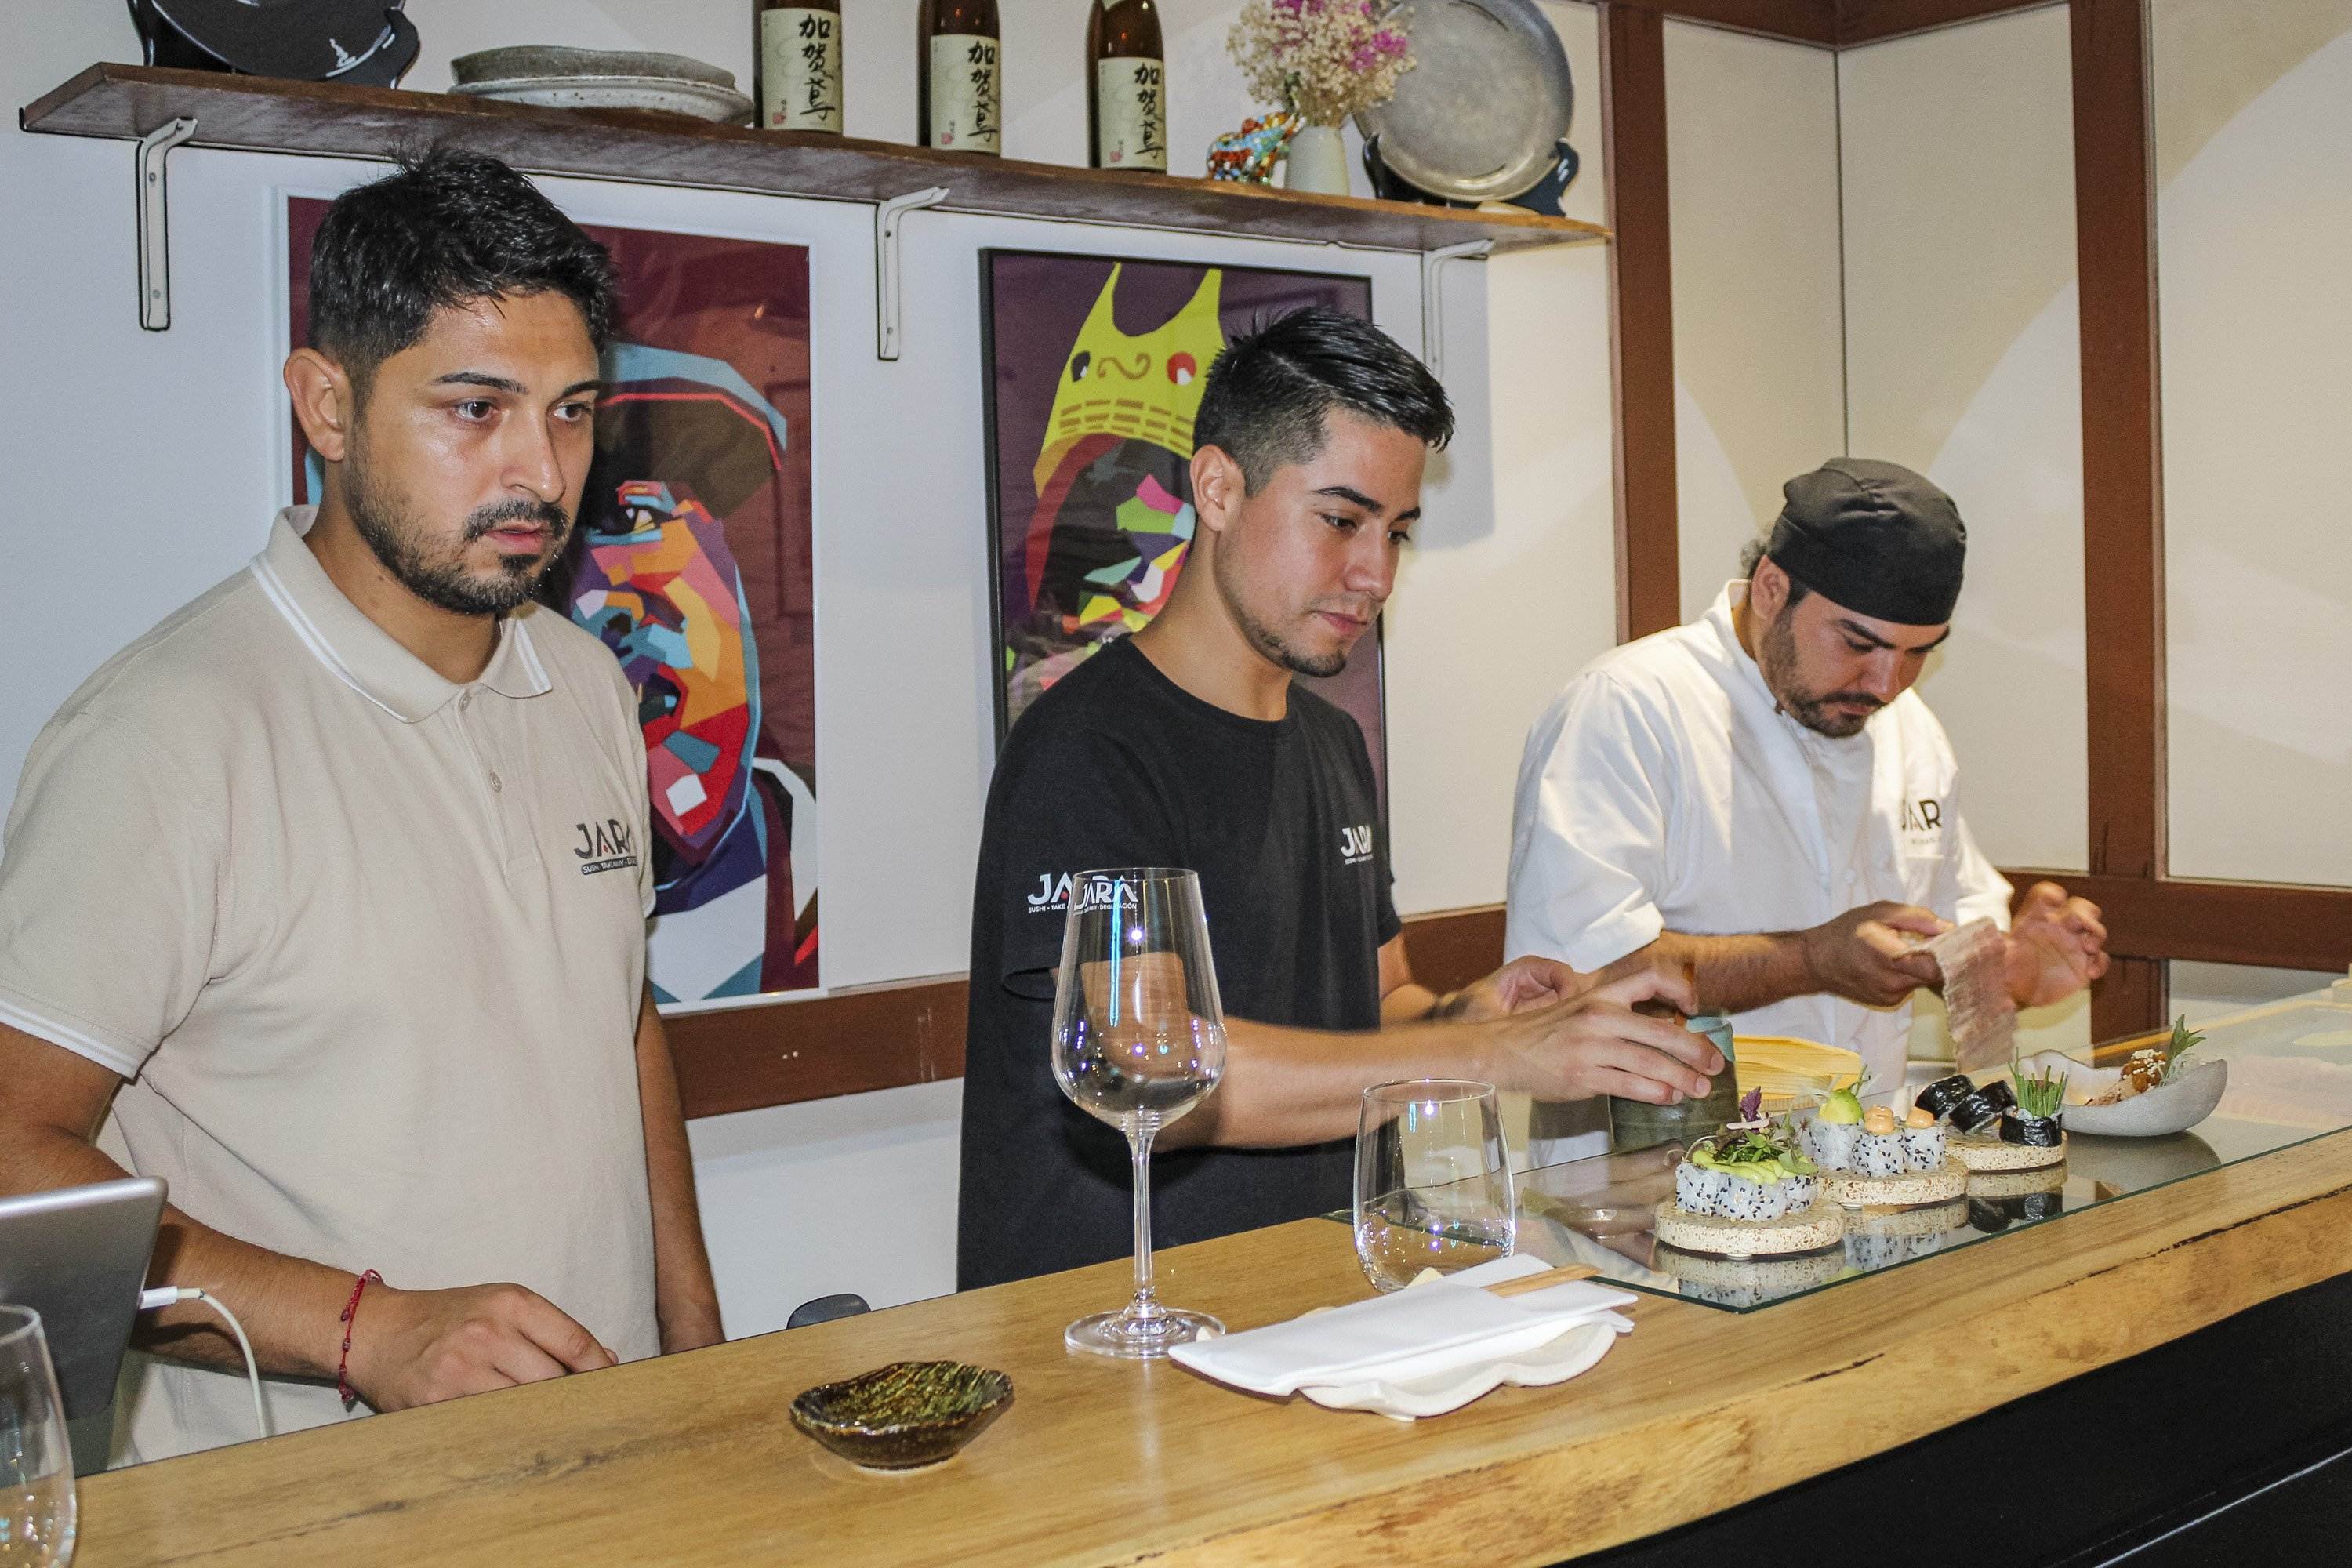 El sushi con el pescado más salvaje lo encontrarás en este japonés de Sarrià-Sant Gervasi